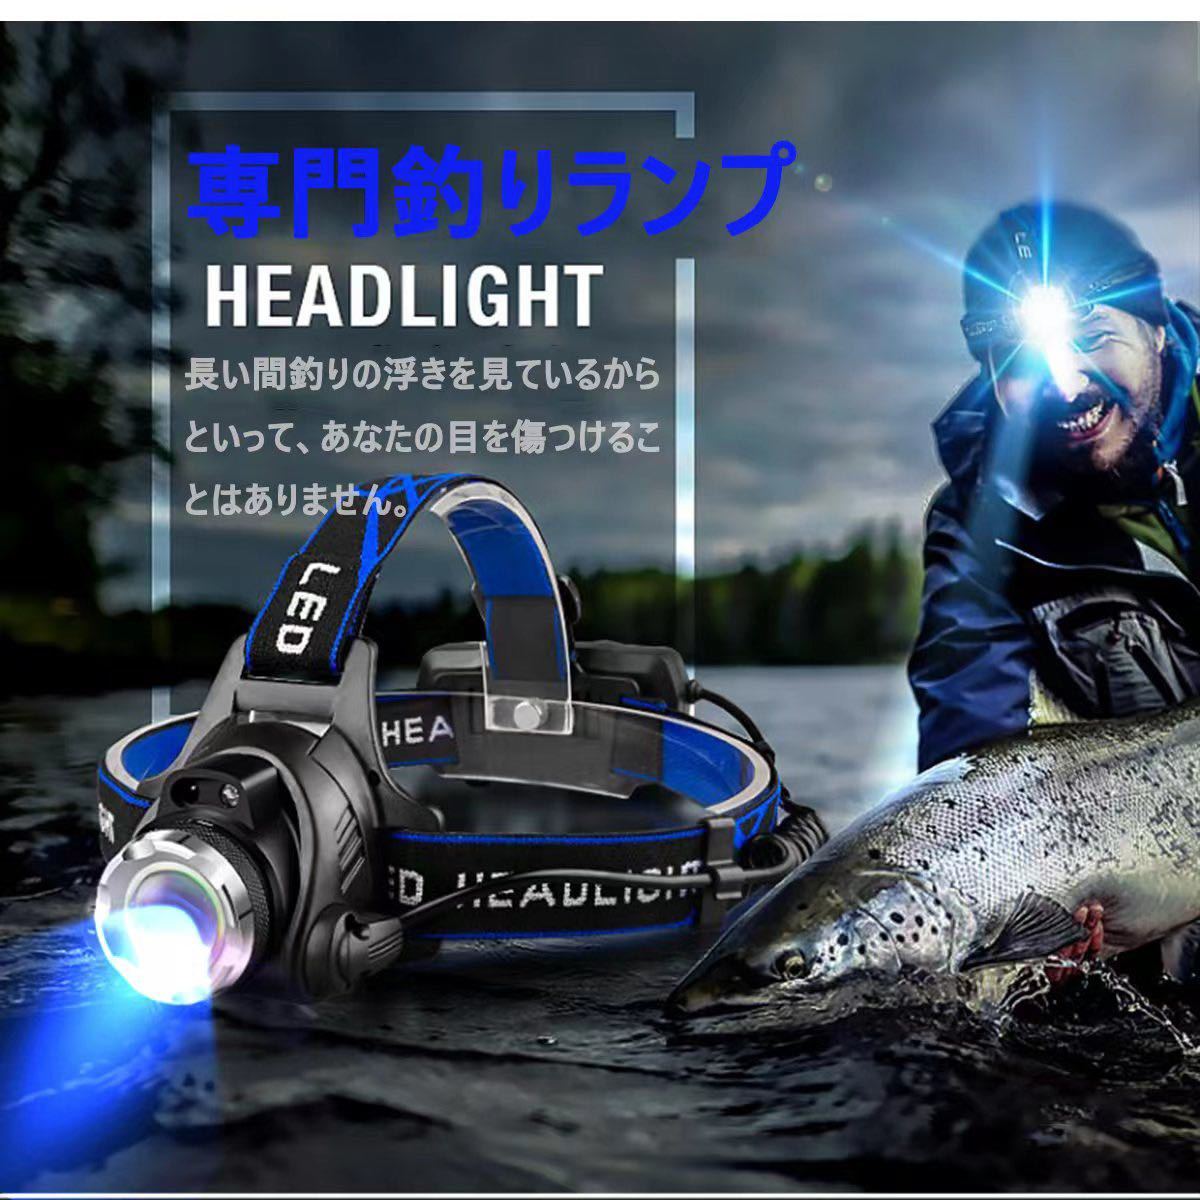 【2個セット】LEDヘッドライト センサー USB充電式 4モード 高輝度 明るい 作業用ライト 防水 作業 キャンプ